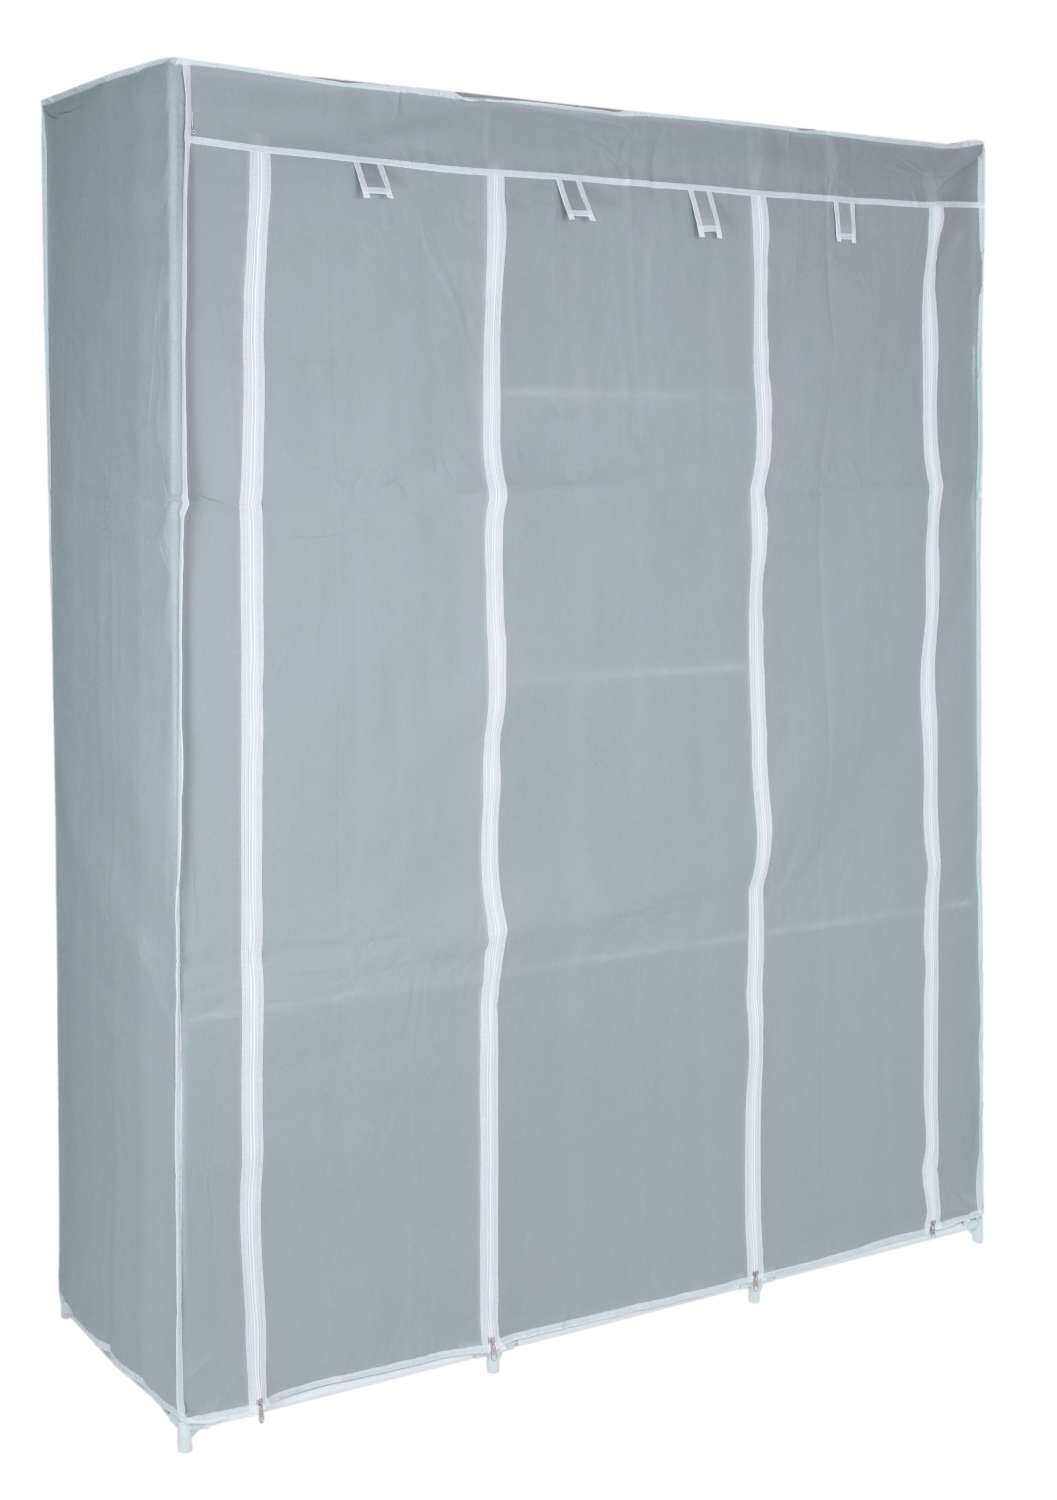 Garderoba tekstylna z 8 półkami SONIA szaro-biała wzór MONSTERA